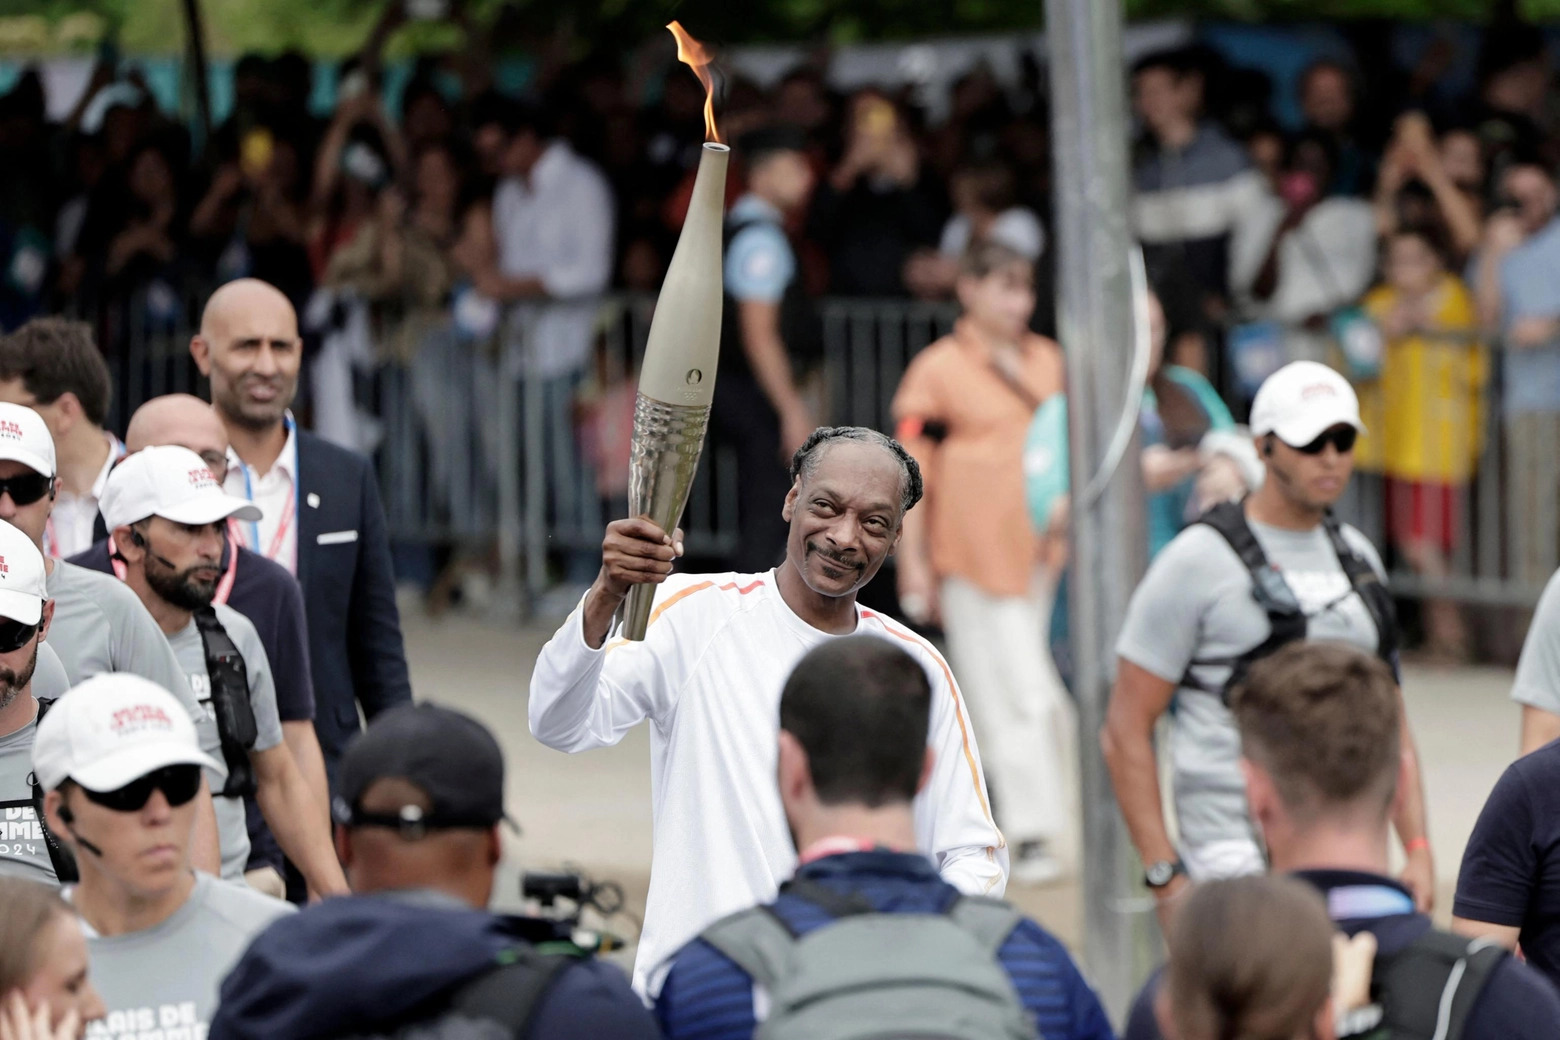 Il rapper americano Snoop Dogg con in mano la torcia olimpica, una delle immagini subito diventata virale e protagonista di migliaia di meme sui social